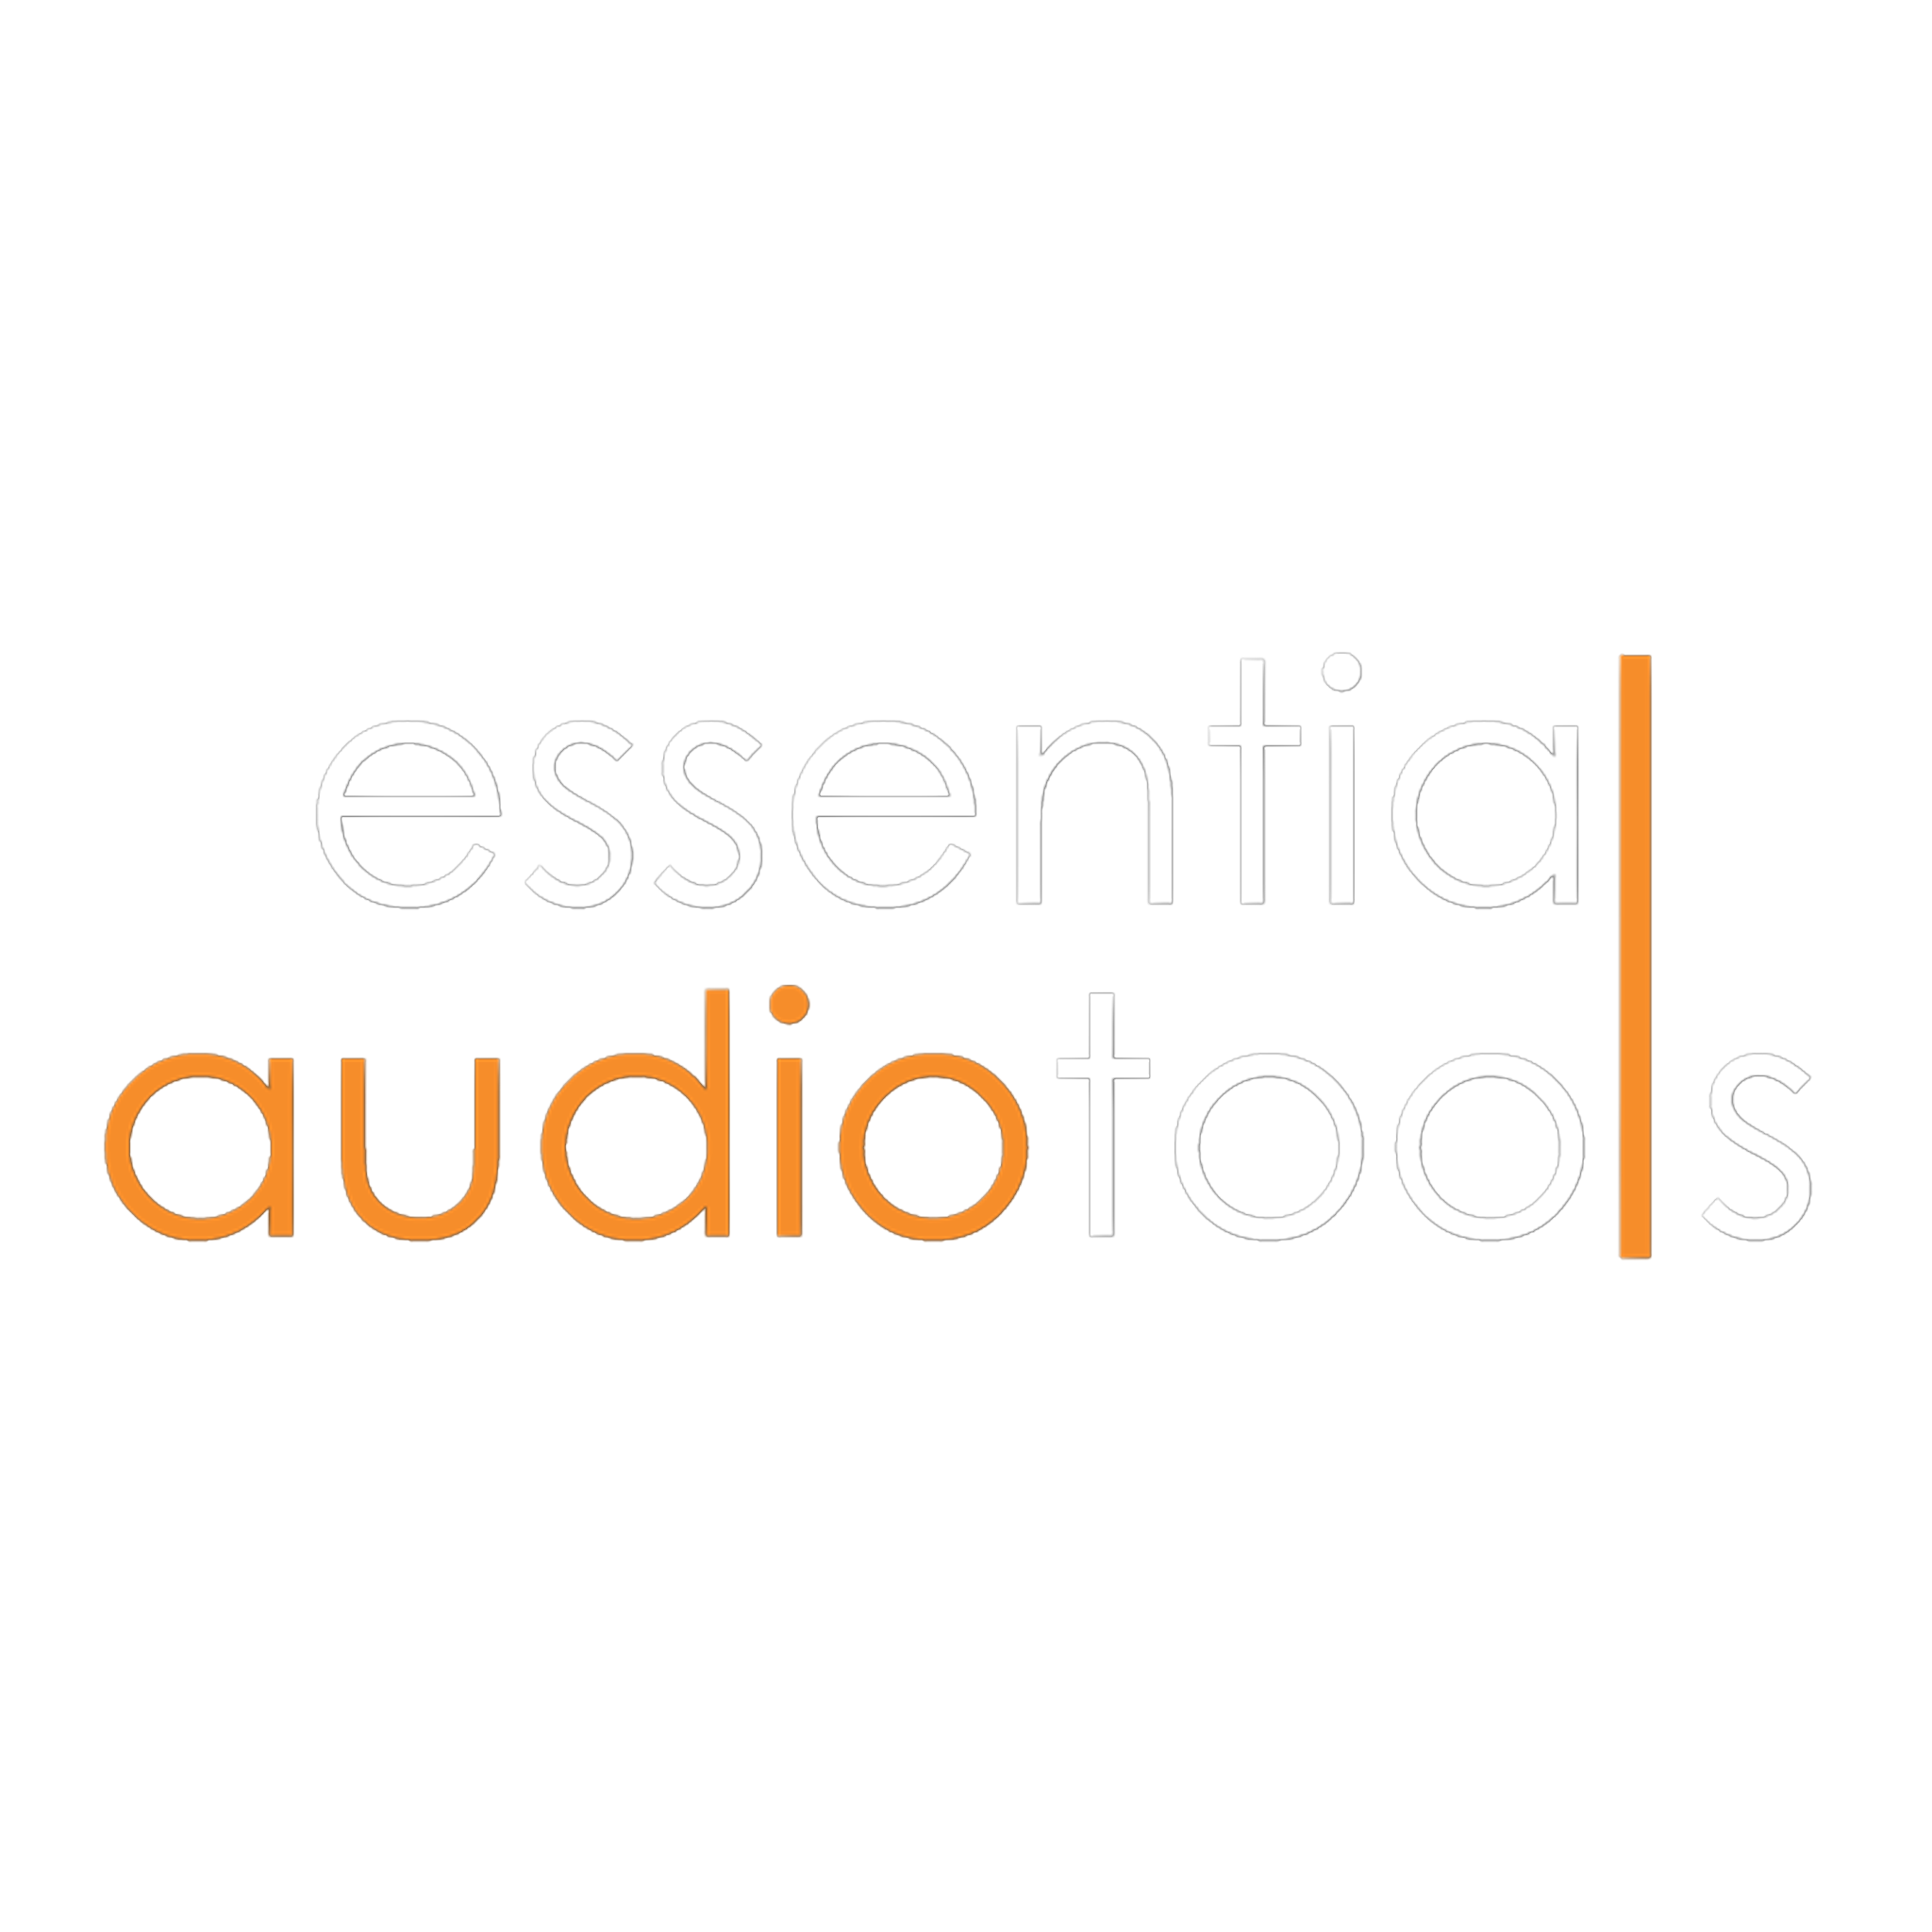 Essential audio tools